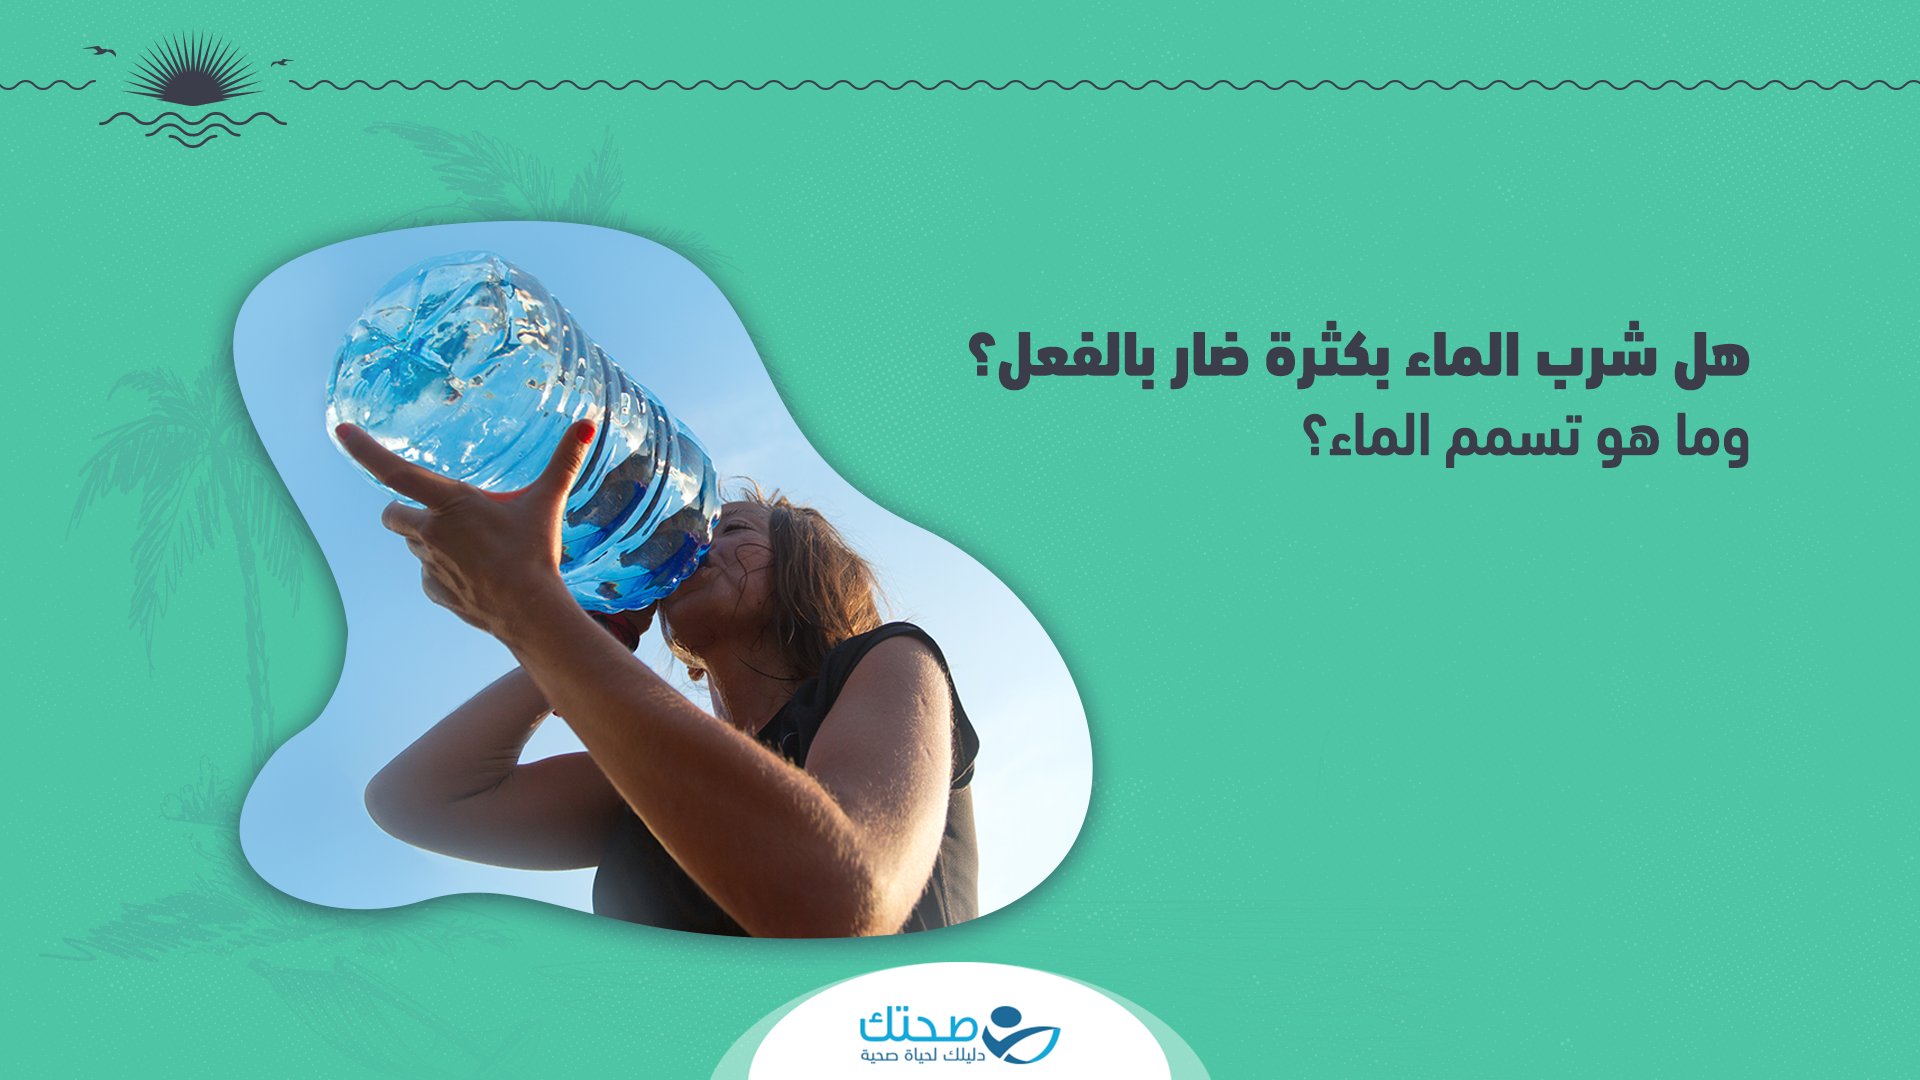 صحتك قد يعاني الشخص من تسمم_الماء إذا شرب الكثير من الماء، وتعرف هذه